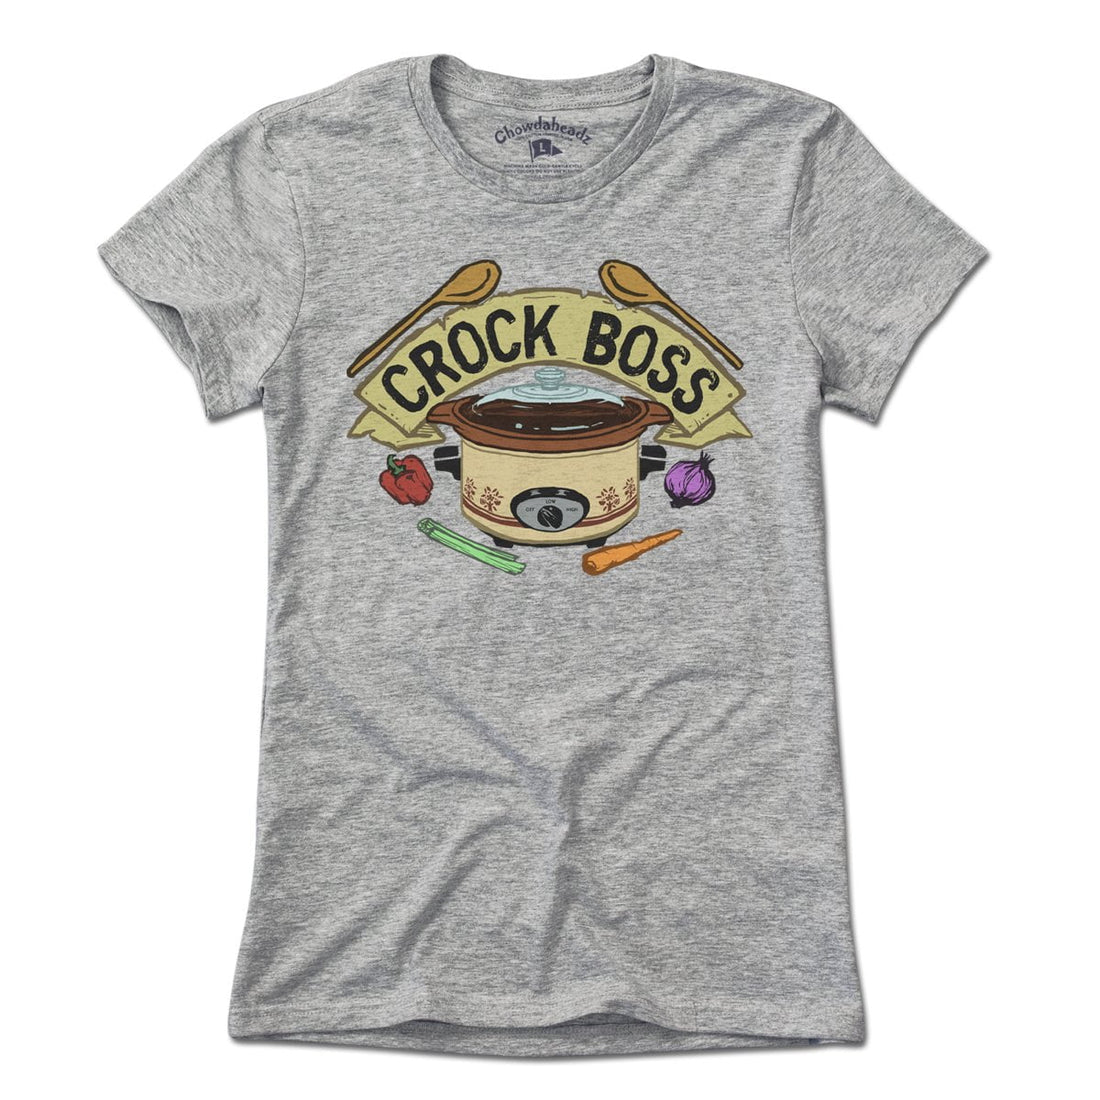 Crock Boss T-Shirt - Chowdaheadz